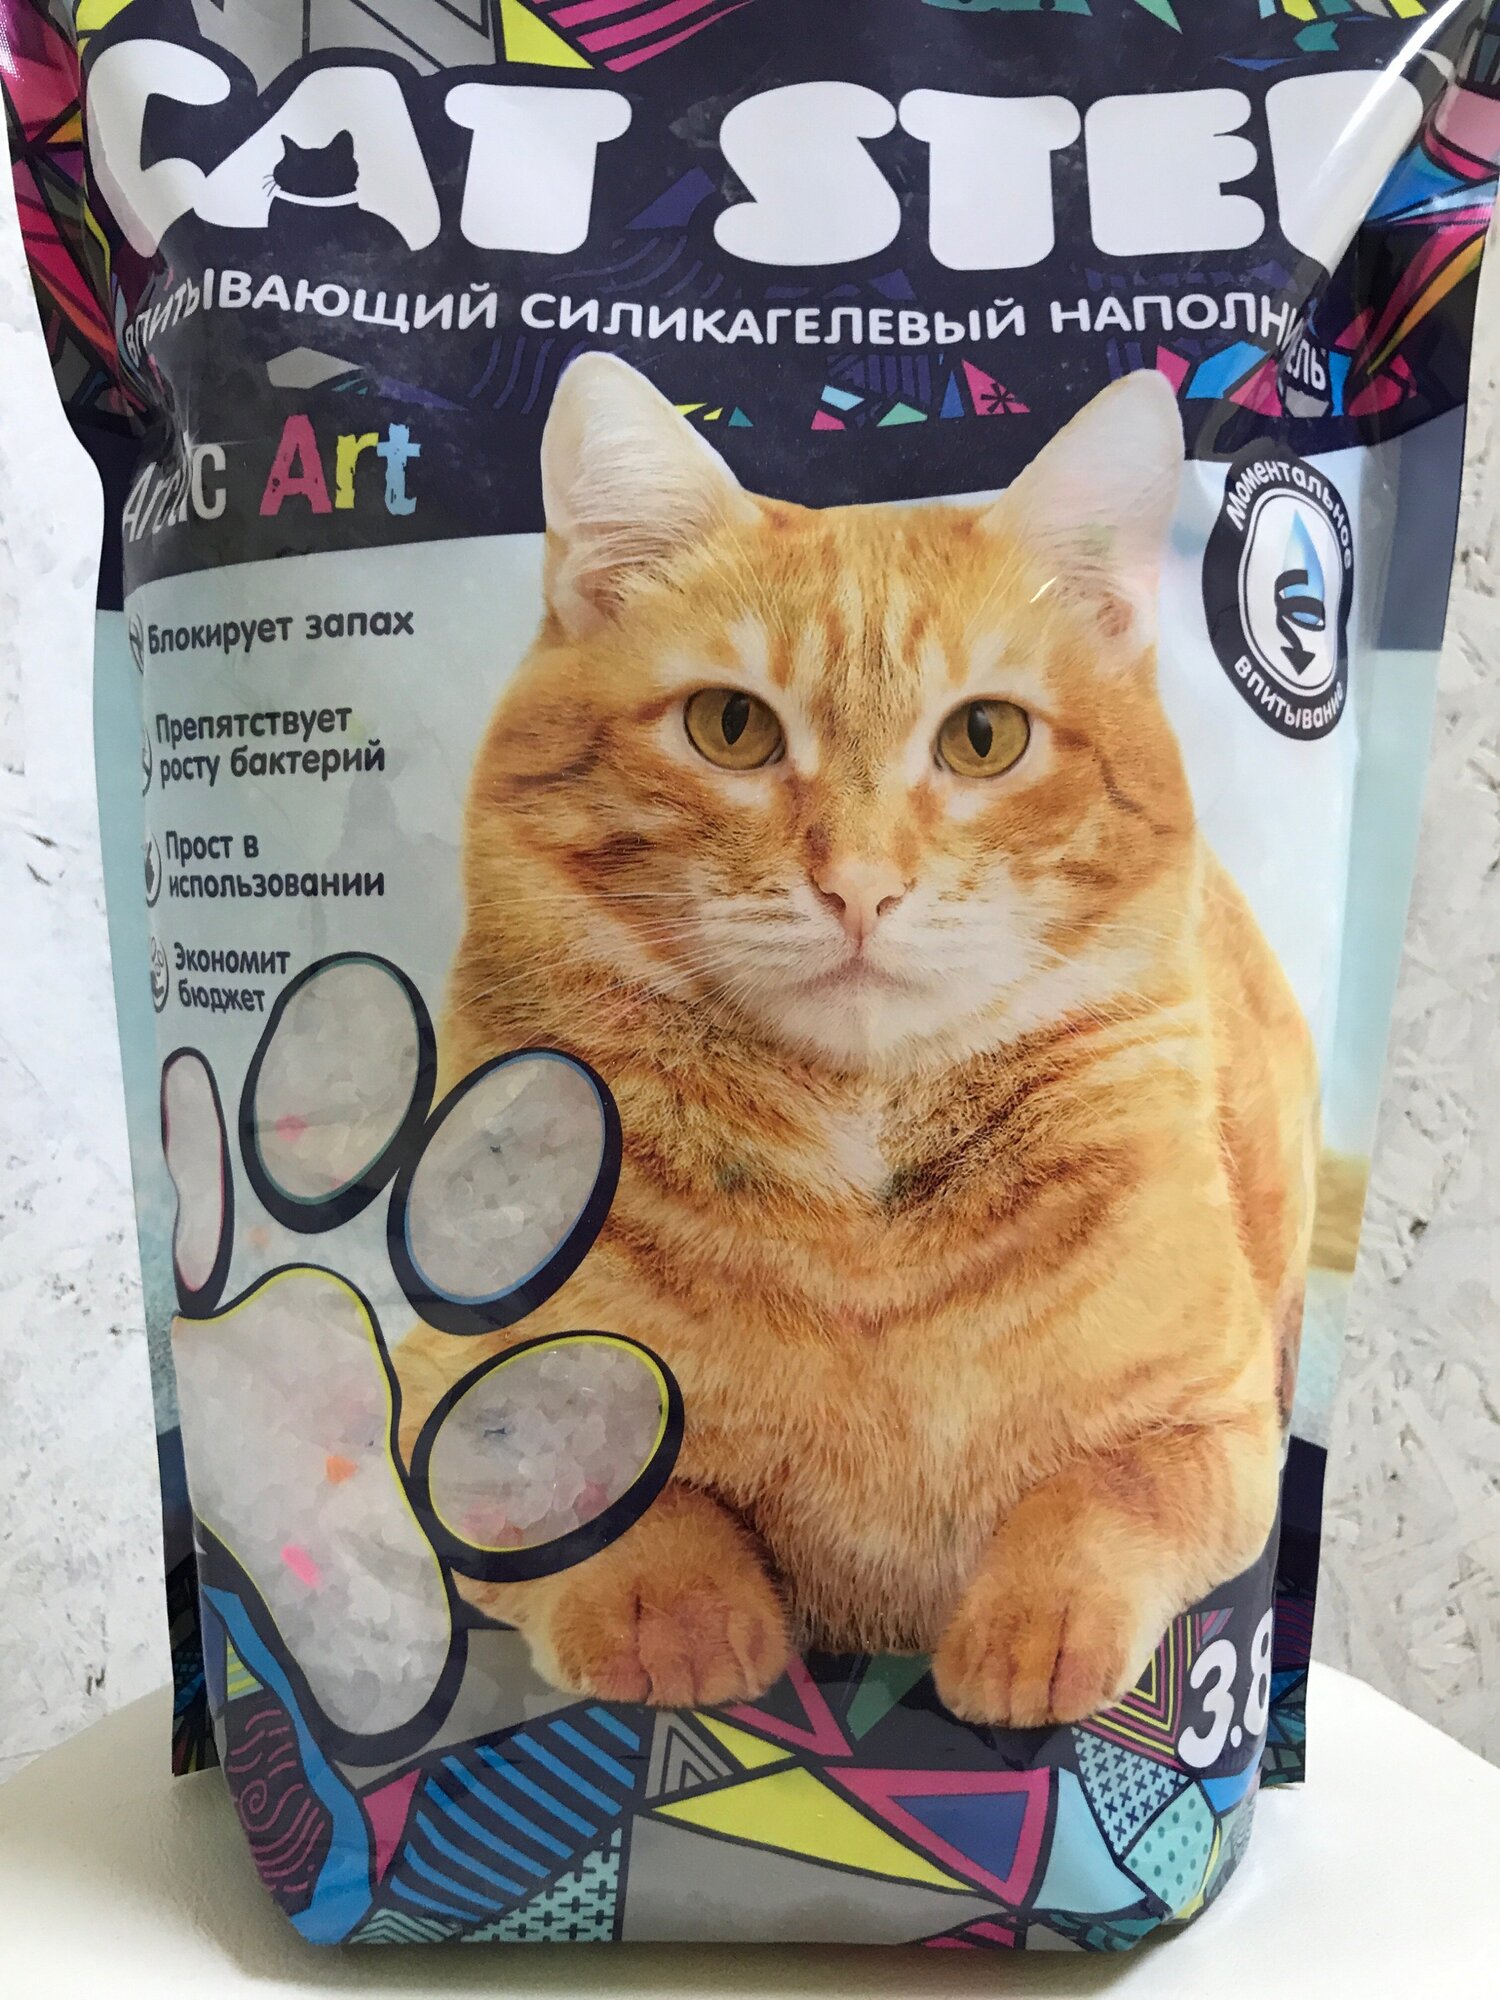 CAt Step Наполнитель впитывающий силикагелевый CAT STEP Arctic Art, 3,8 л